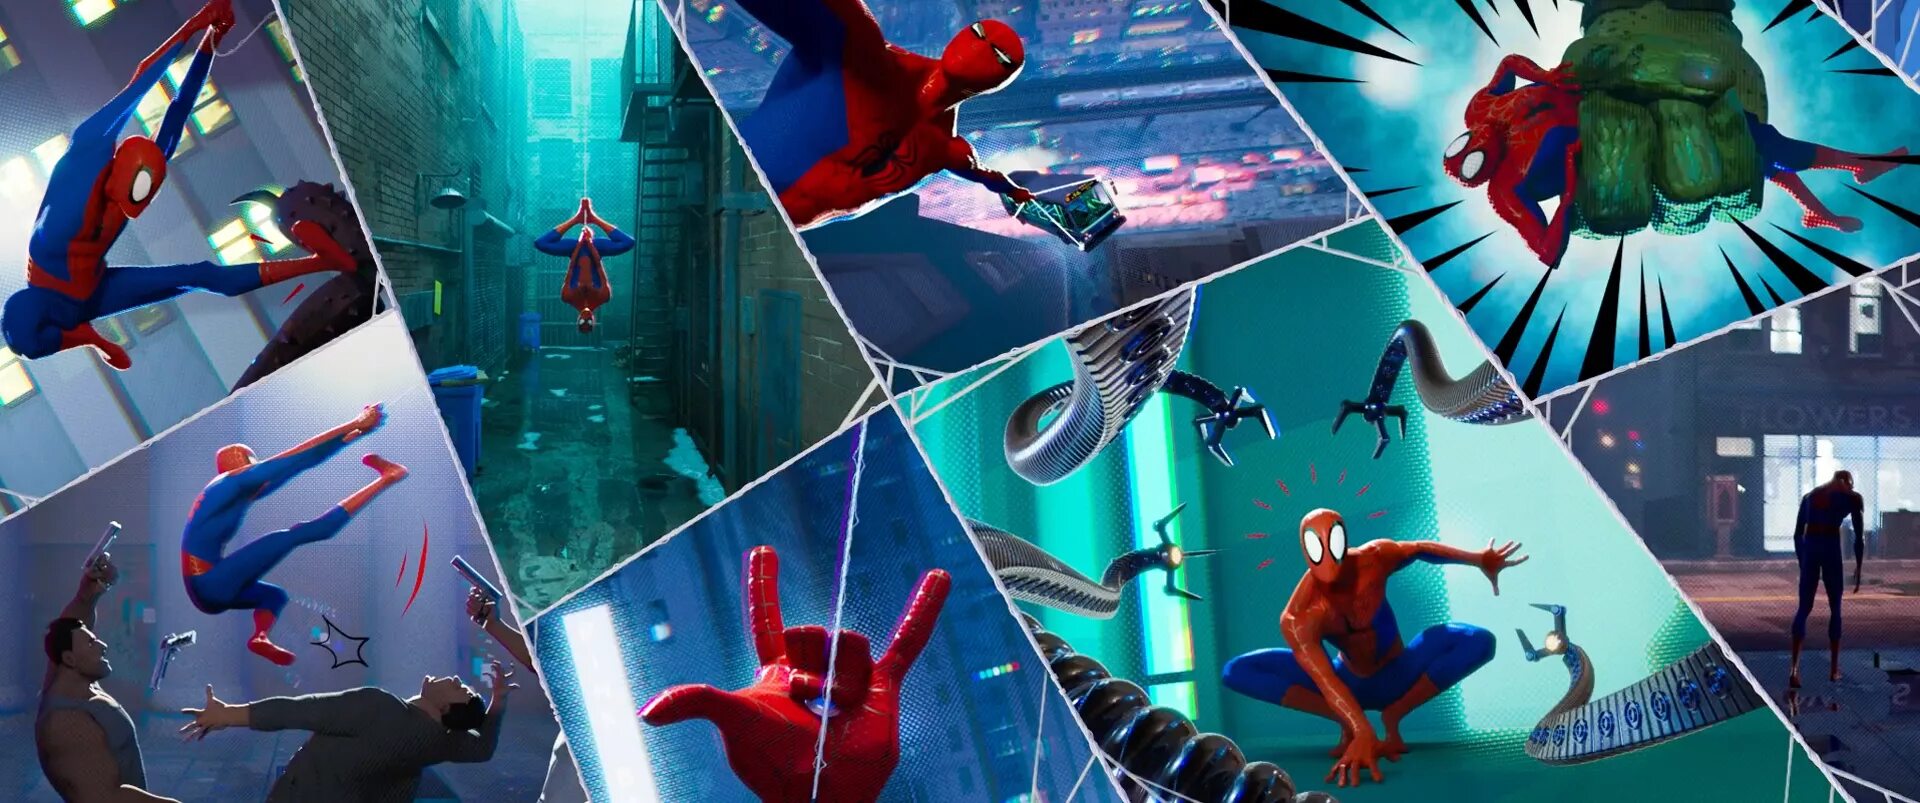 Человек-паук сквозь вселенные 2. Spider man через вселенные. Питер Паркер из человека паука через вселенные. Питер Паркер через вселенные 2.